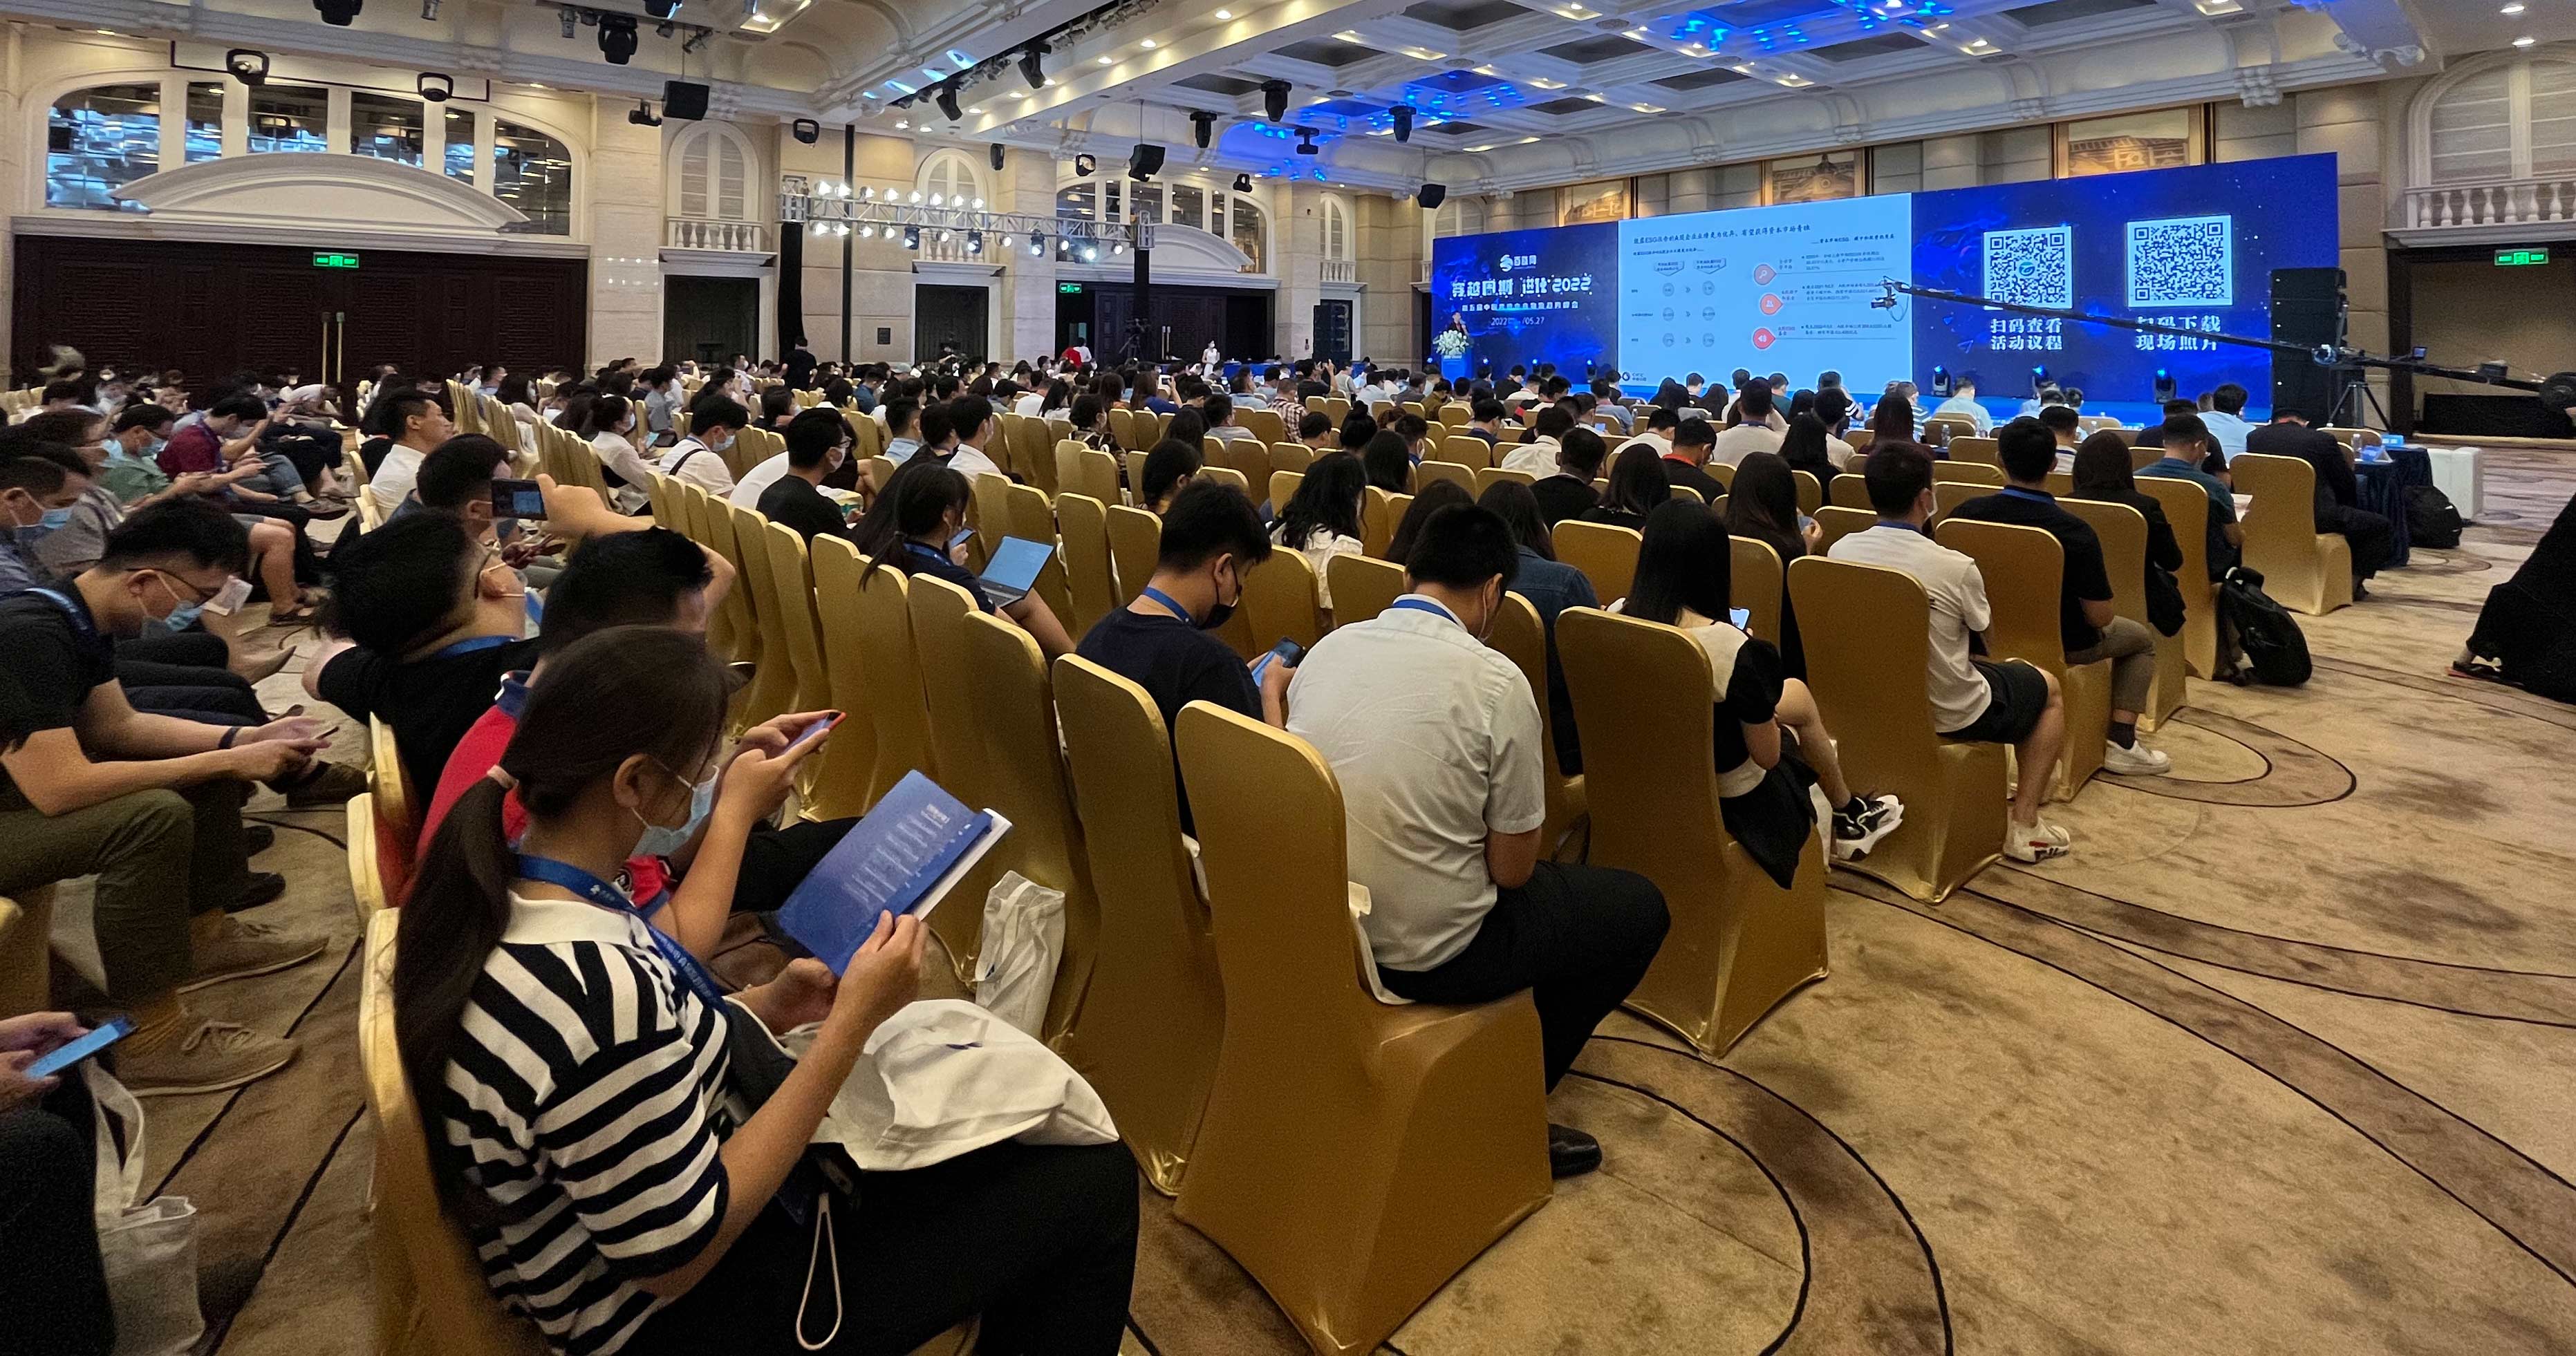 广州泰实物流国际分公司携众员工参加第五届中国跨境电商物流趋势峰会